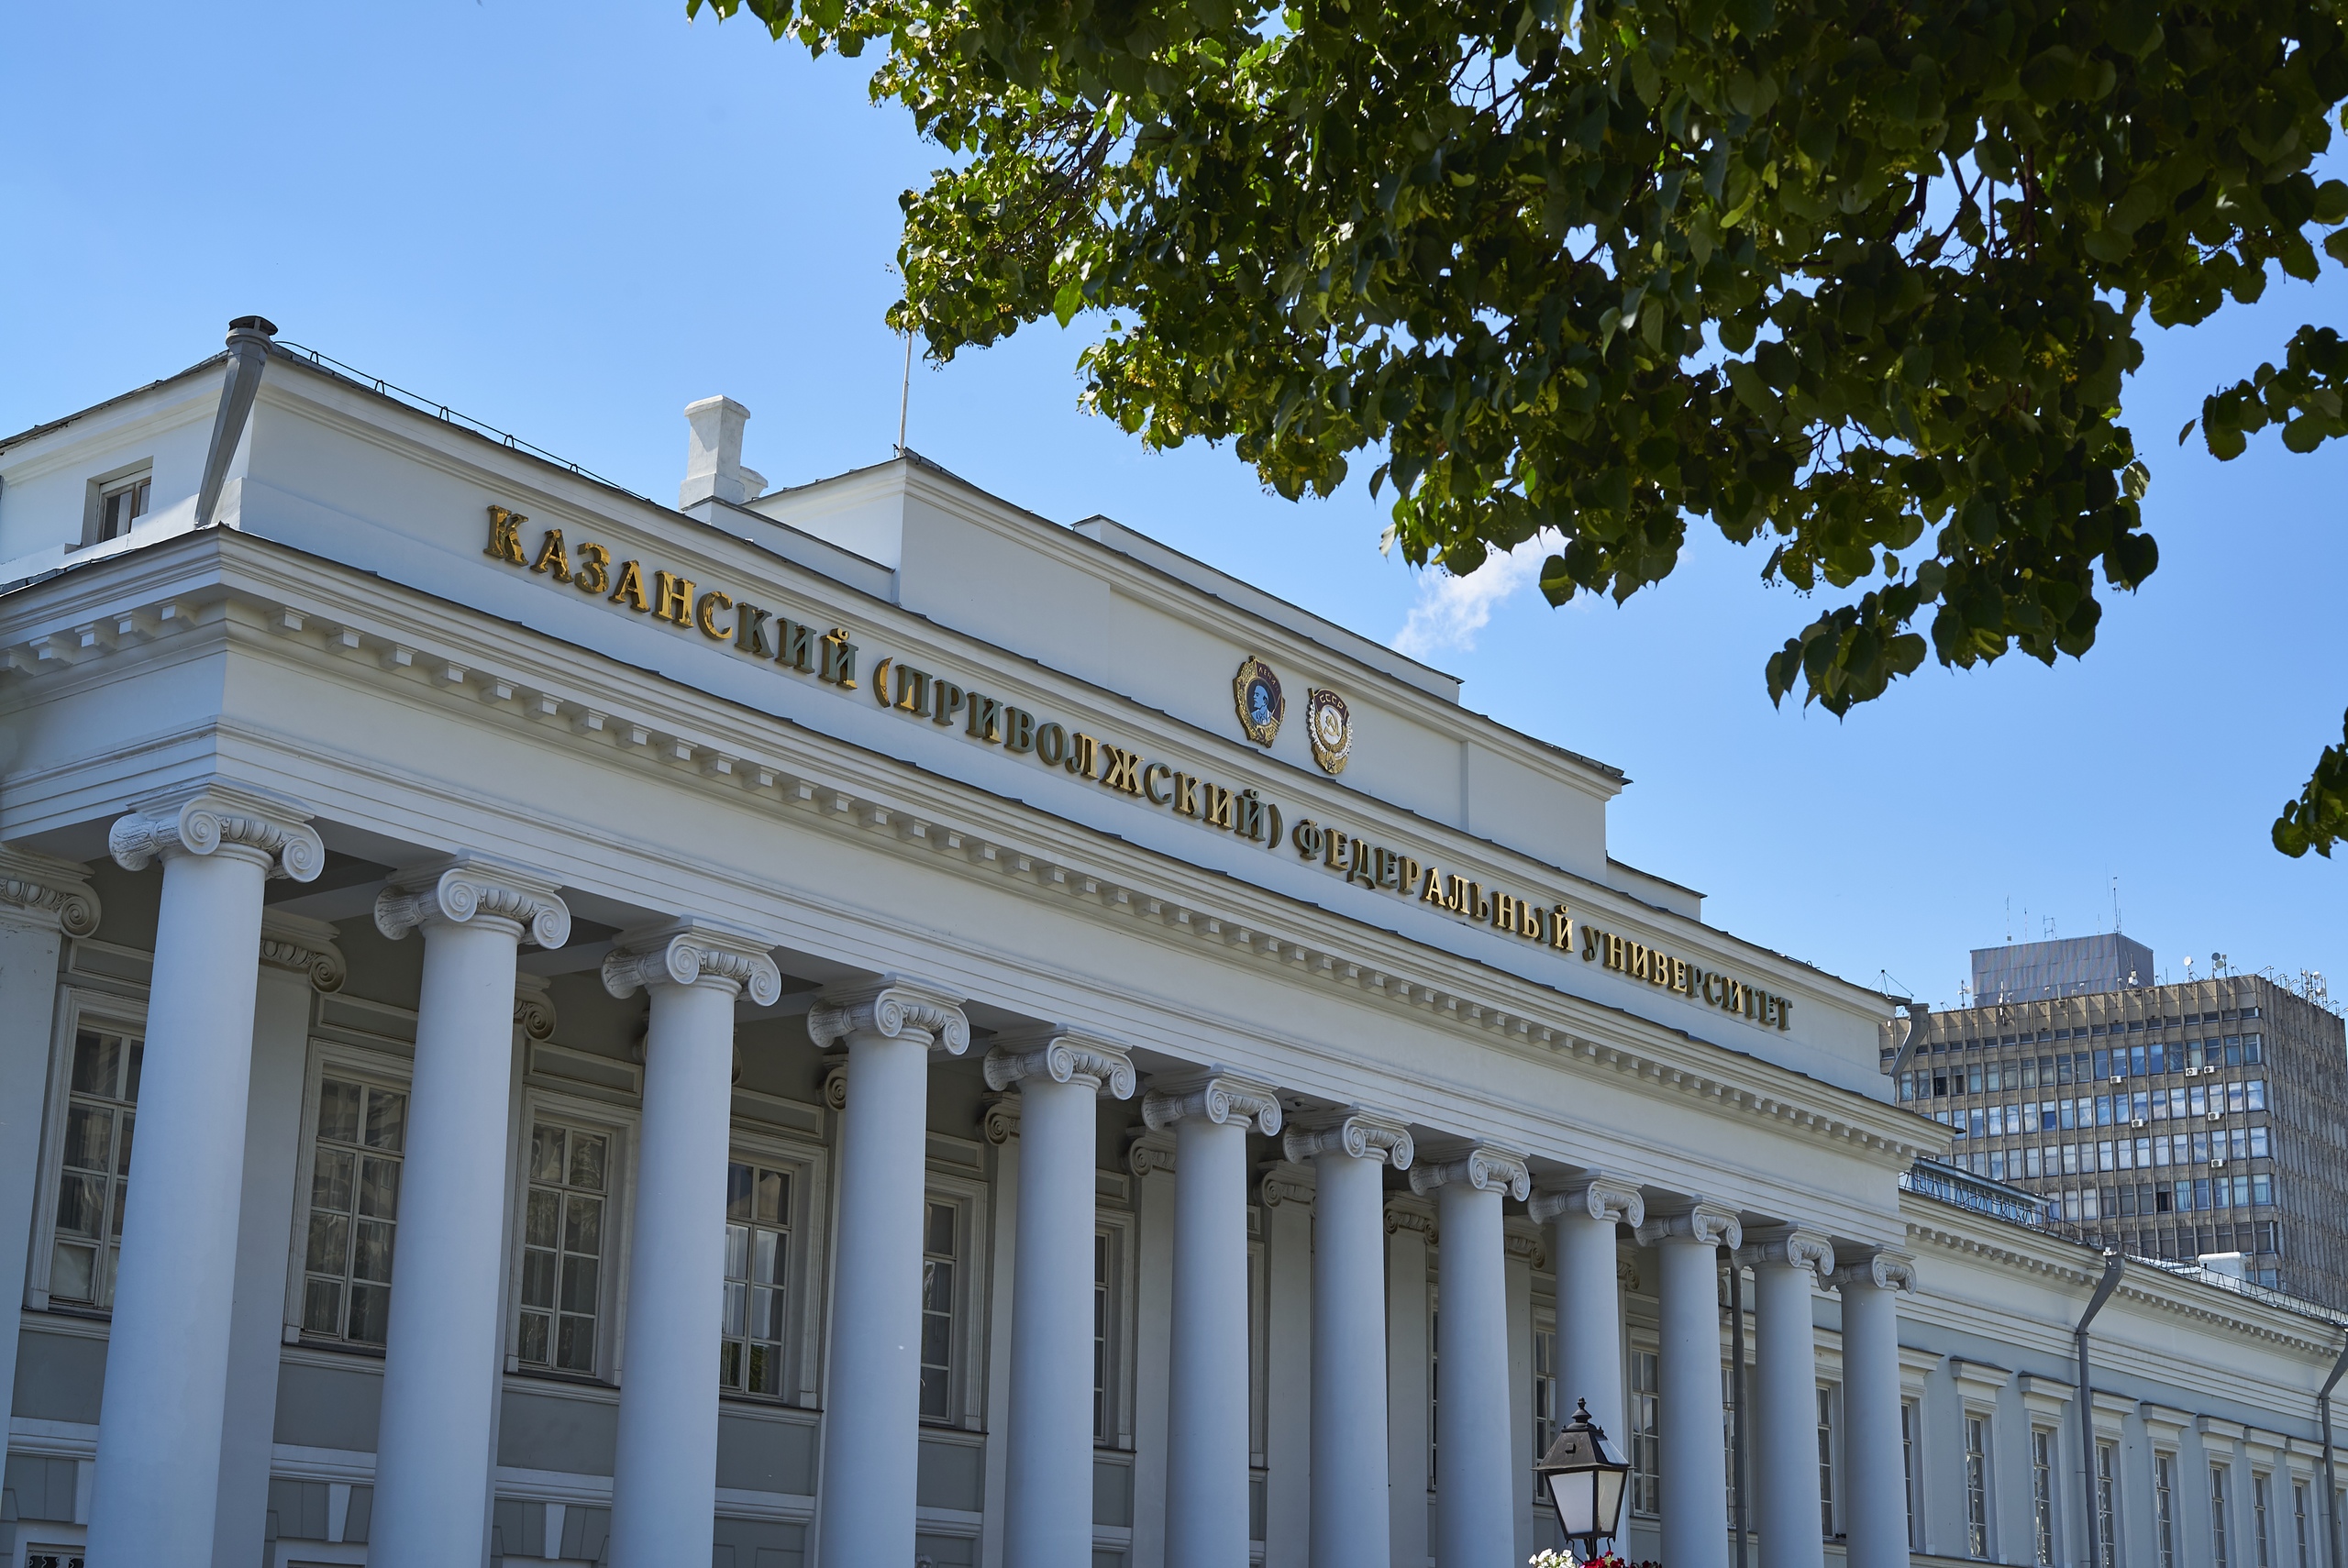 Татарский государственный университет